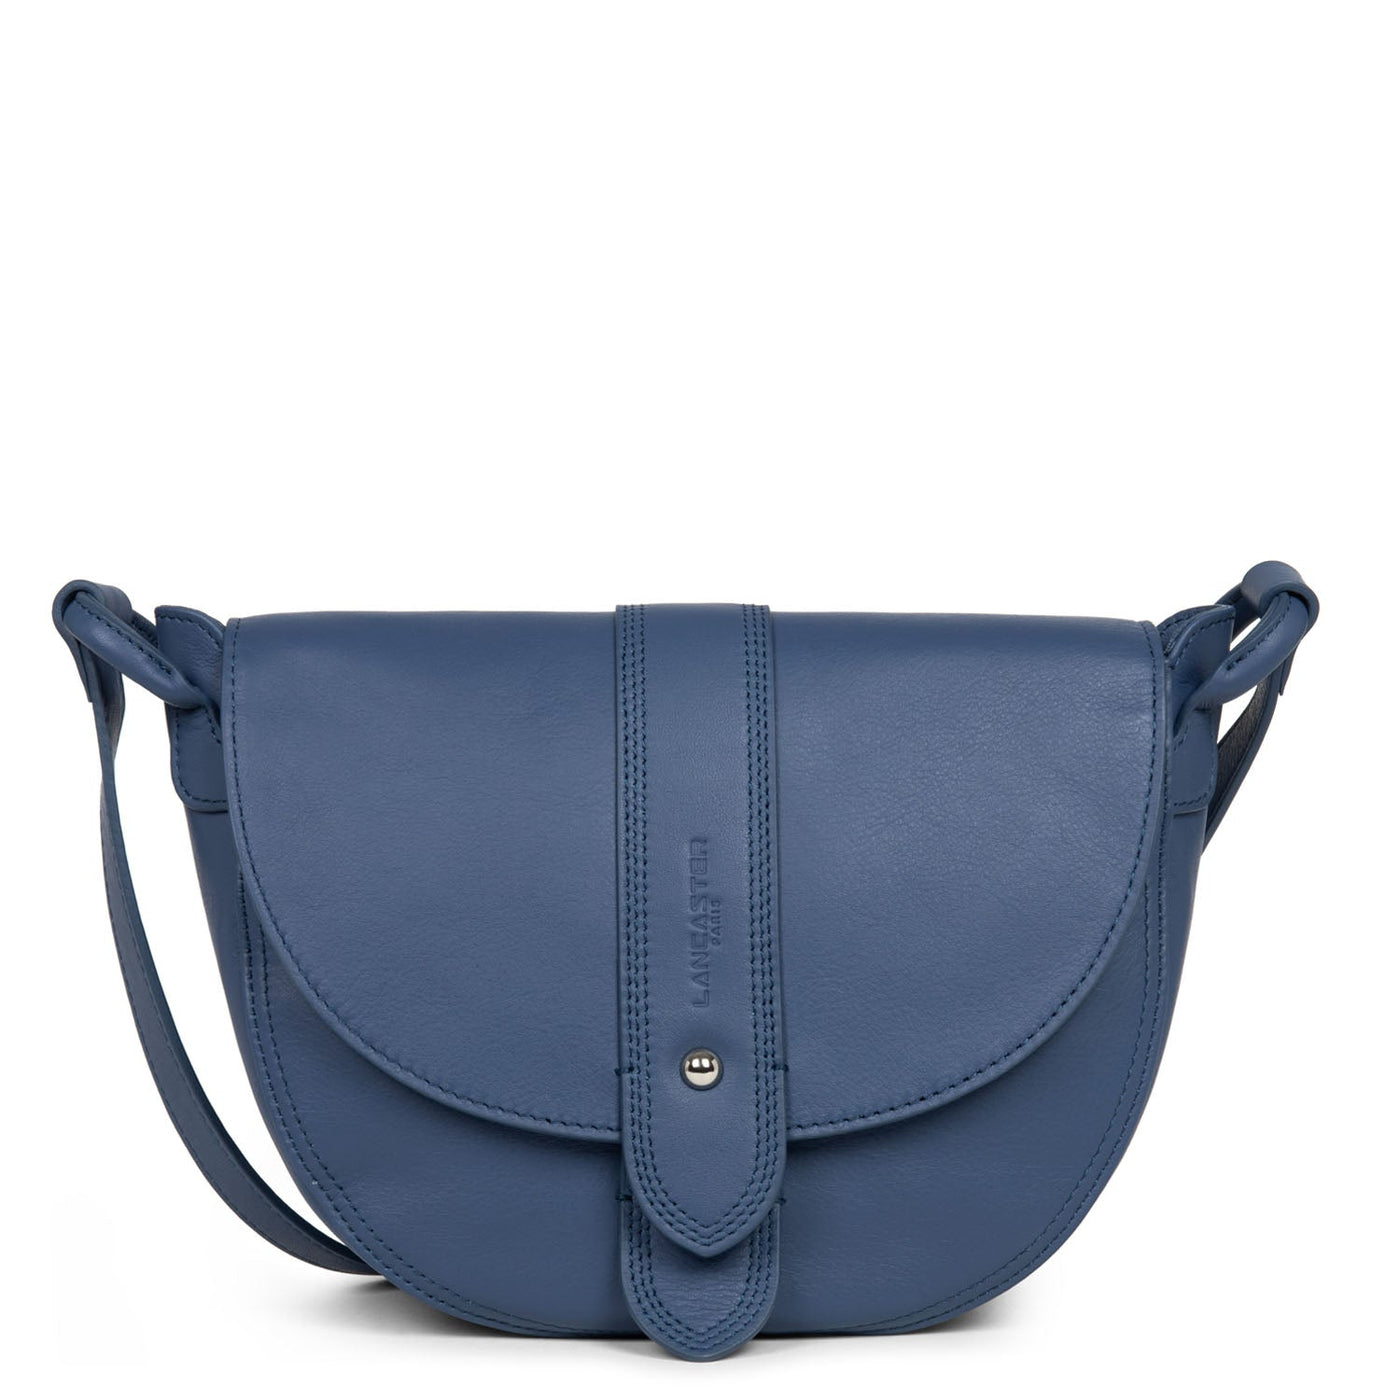 shoulder bag - soft vintage #couleur_bleu